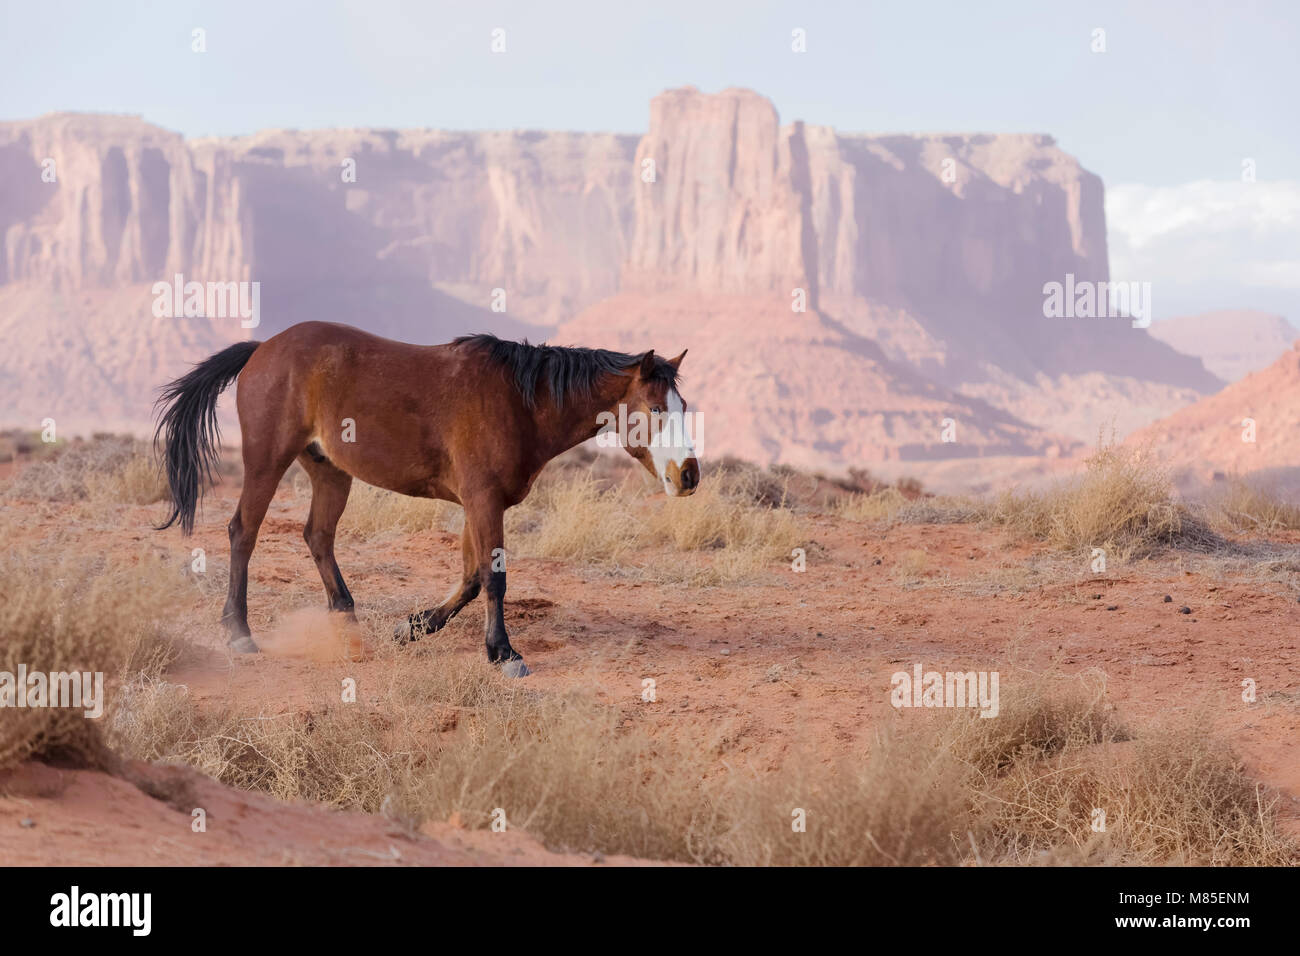 El caballo salvaje con ojos azules y arenisca buttes apagado en la distancia, Monument Valley Tribal Park, Arizona Foto de stock